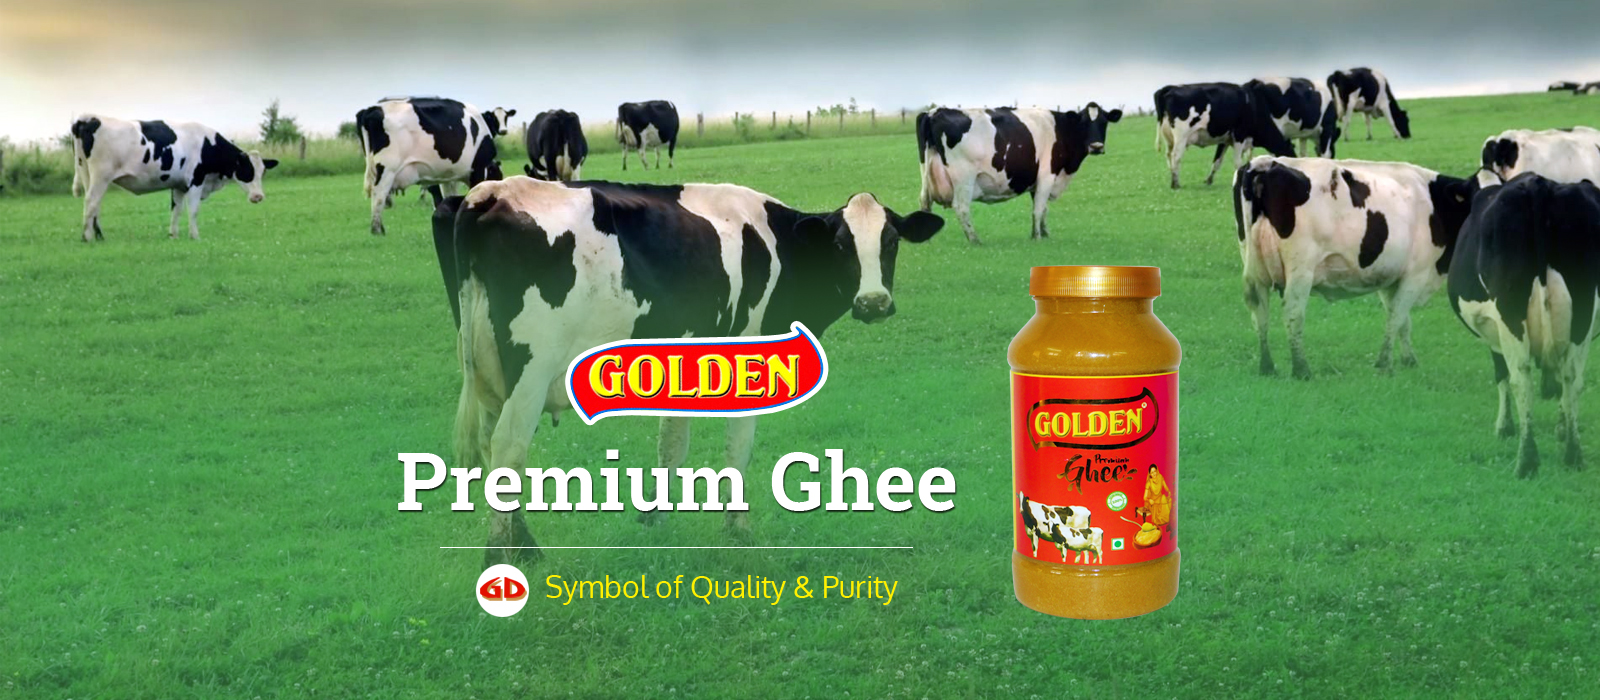 Golden Premium Ghee